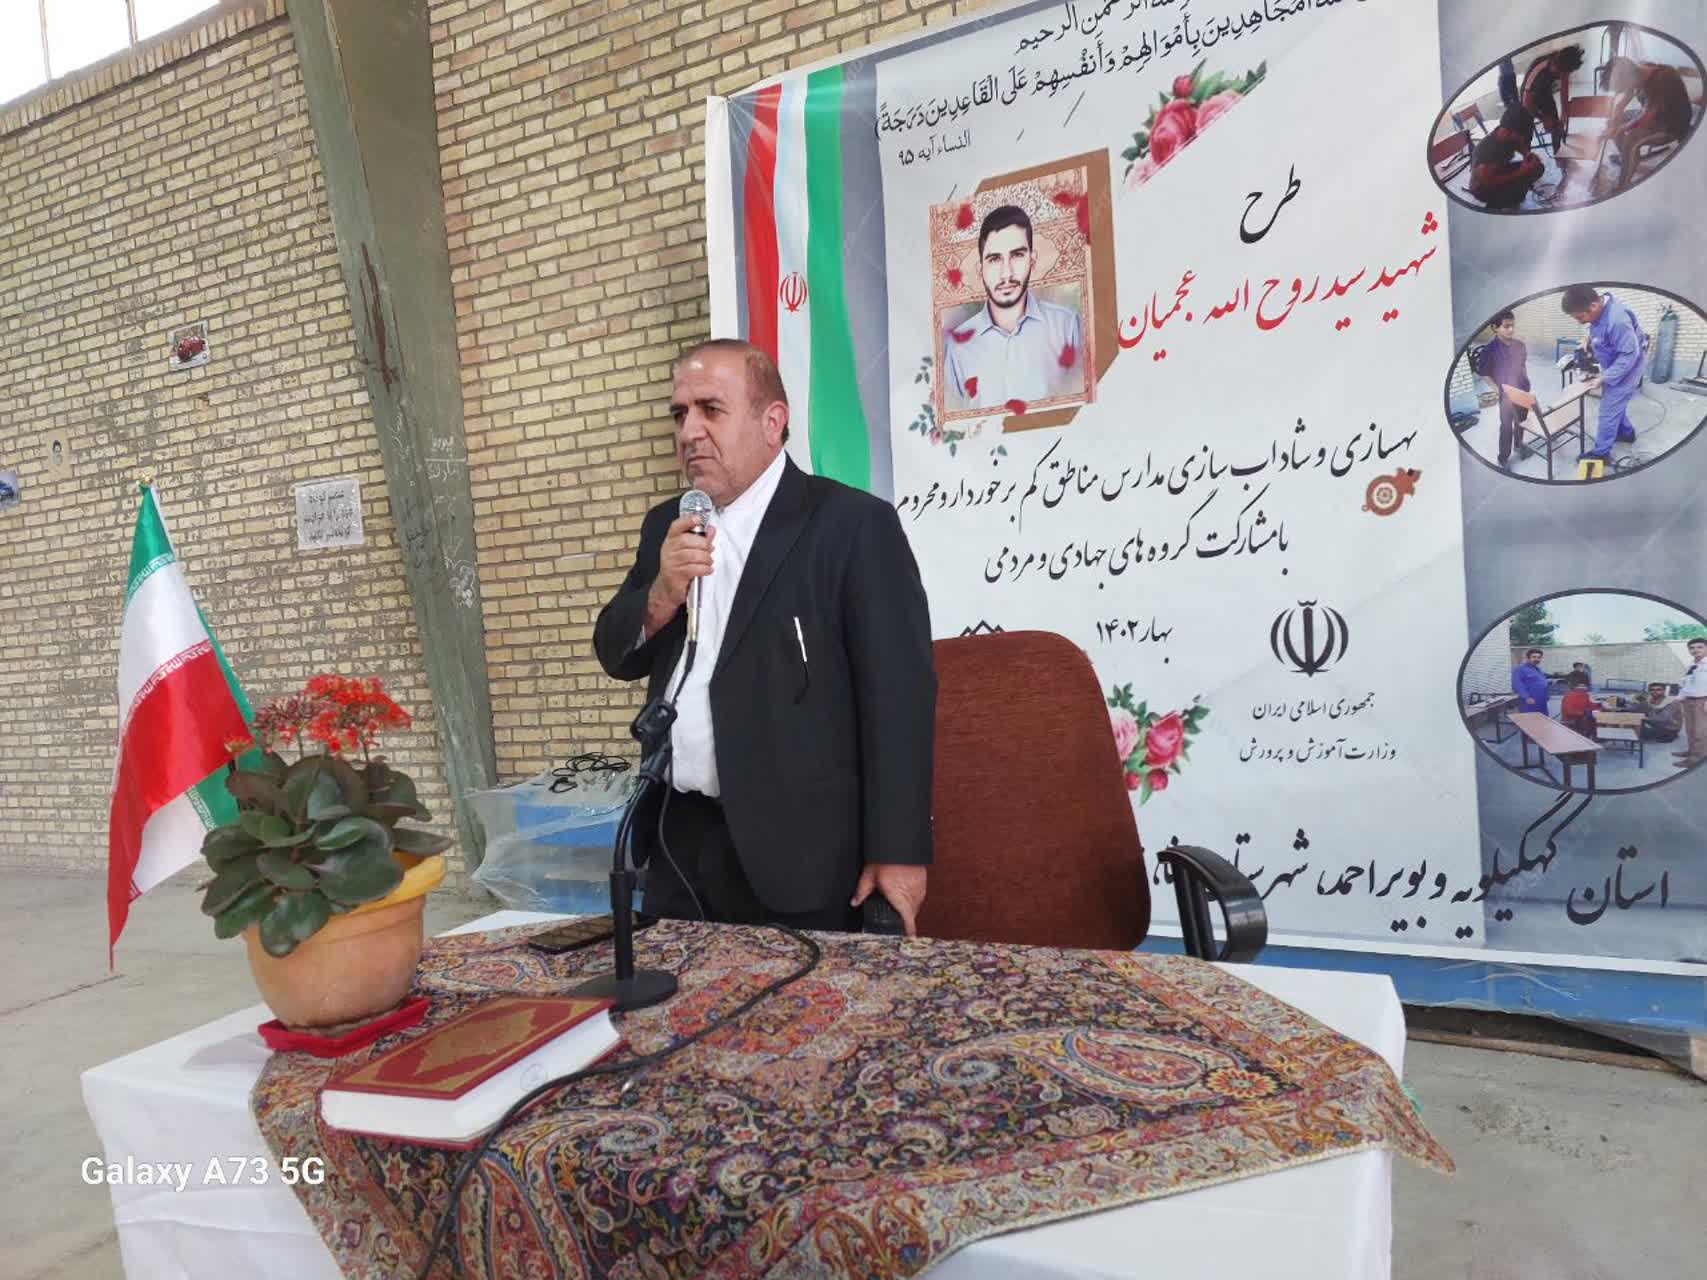 اداره کل آموزش و پرورش استان طرح شهید عجمیان را برگزار می کند 